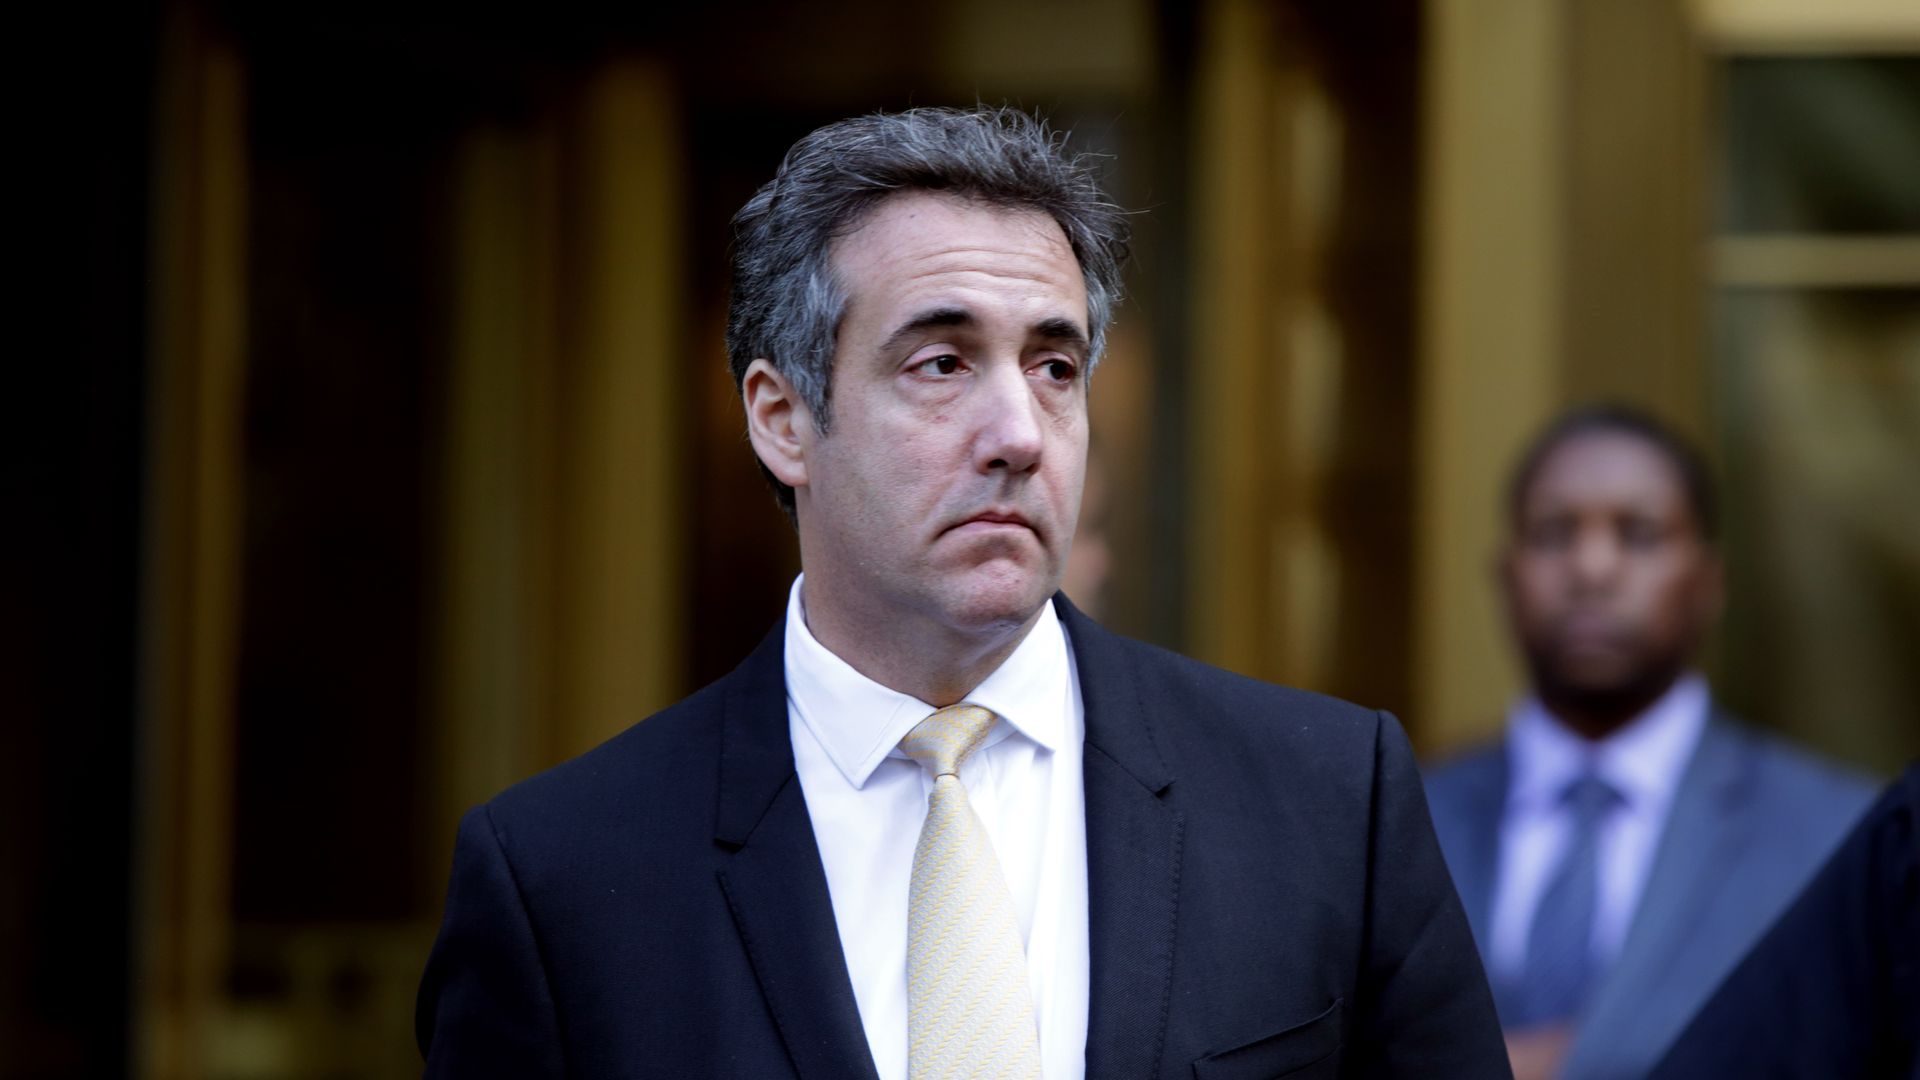 GOP fears Cohen set road to impeachment